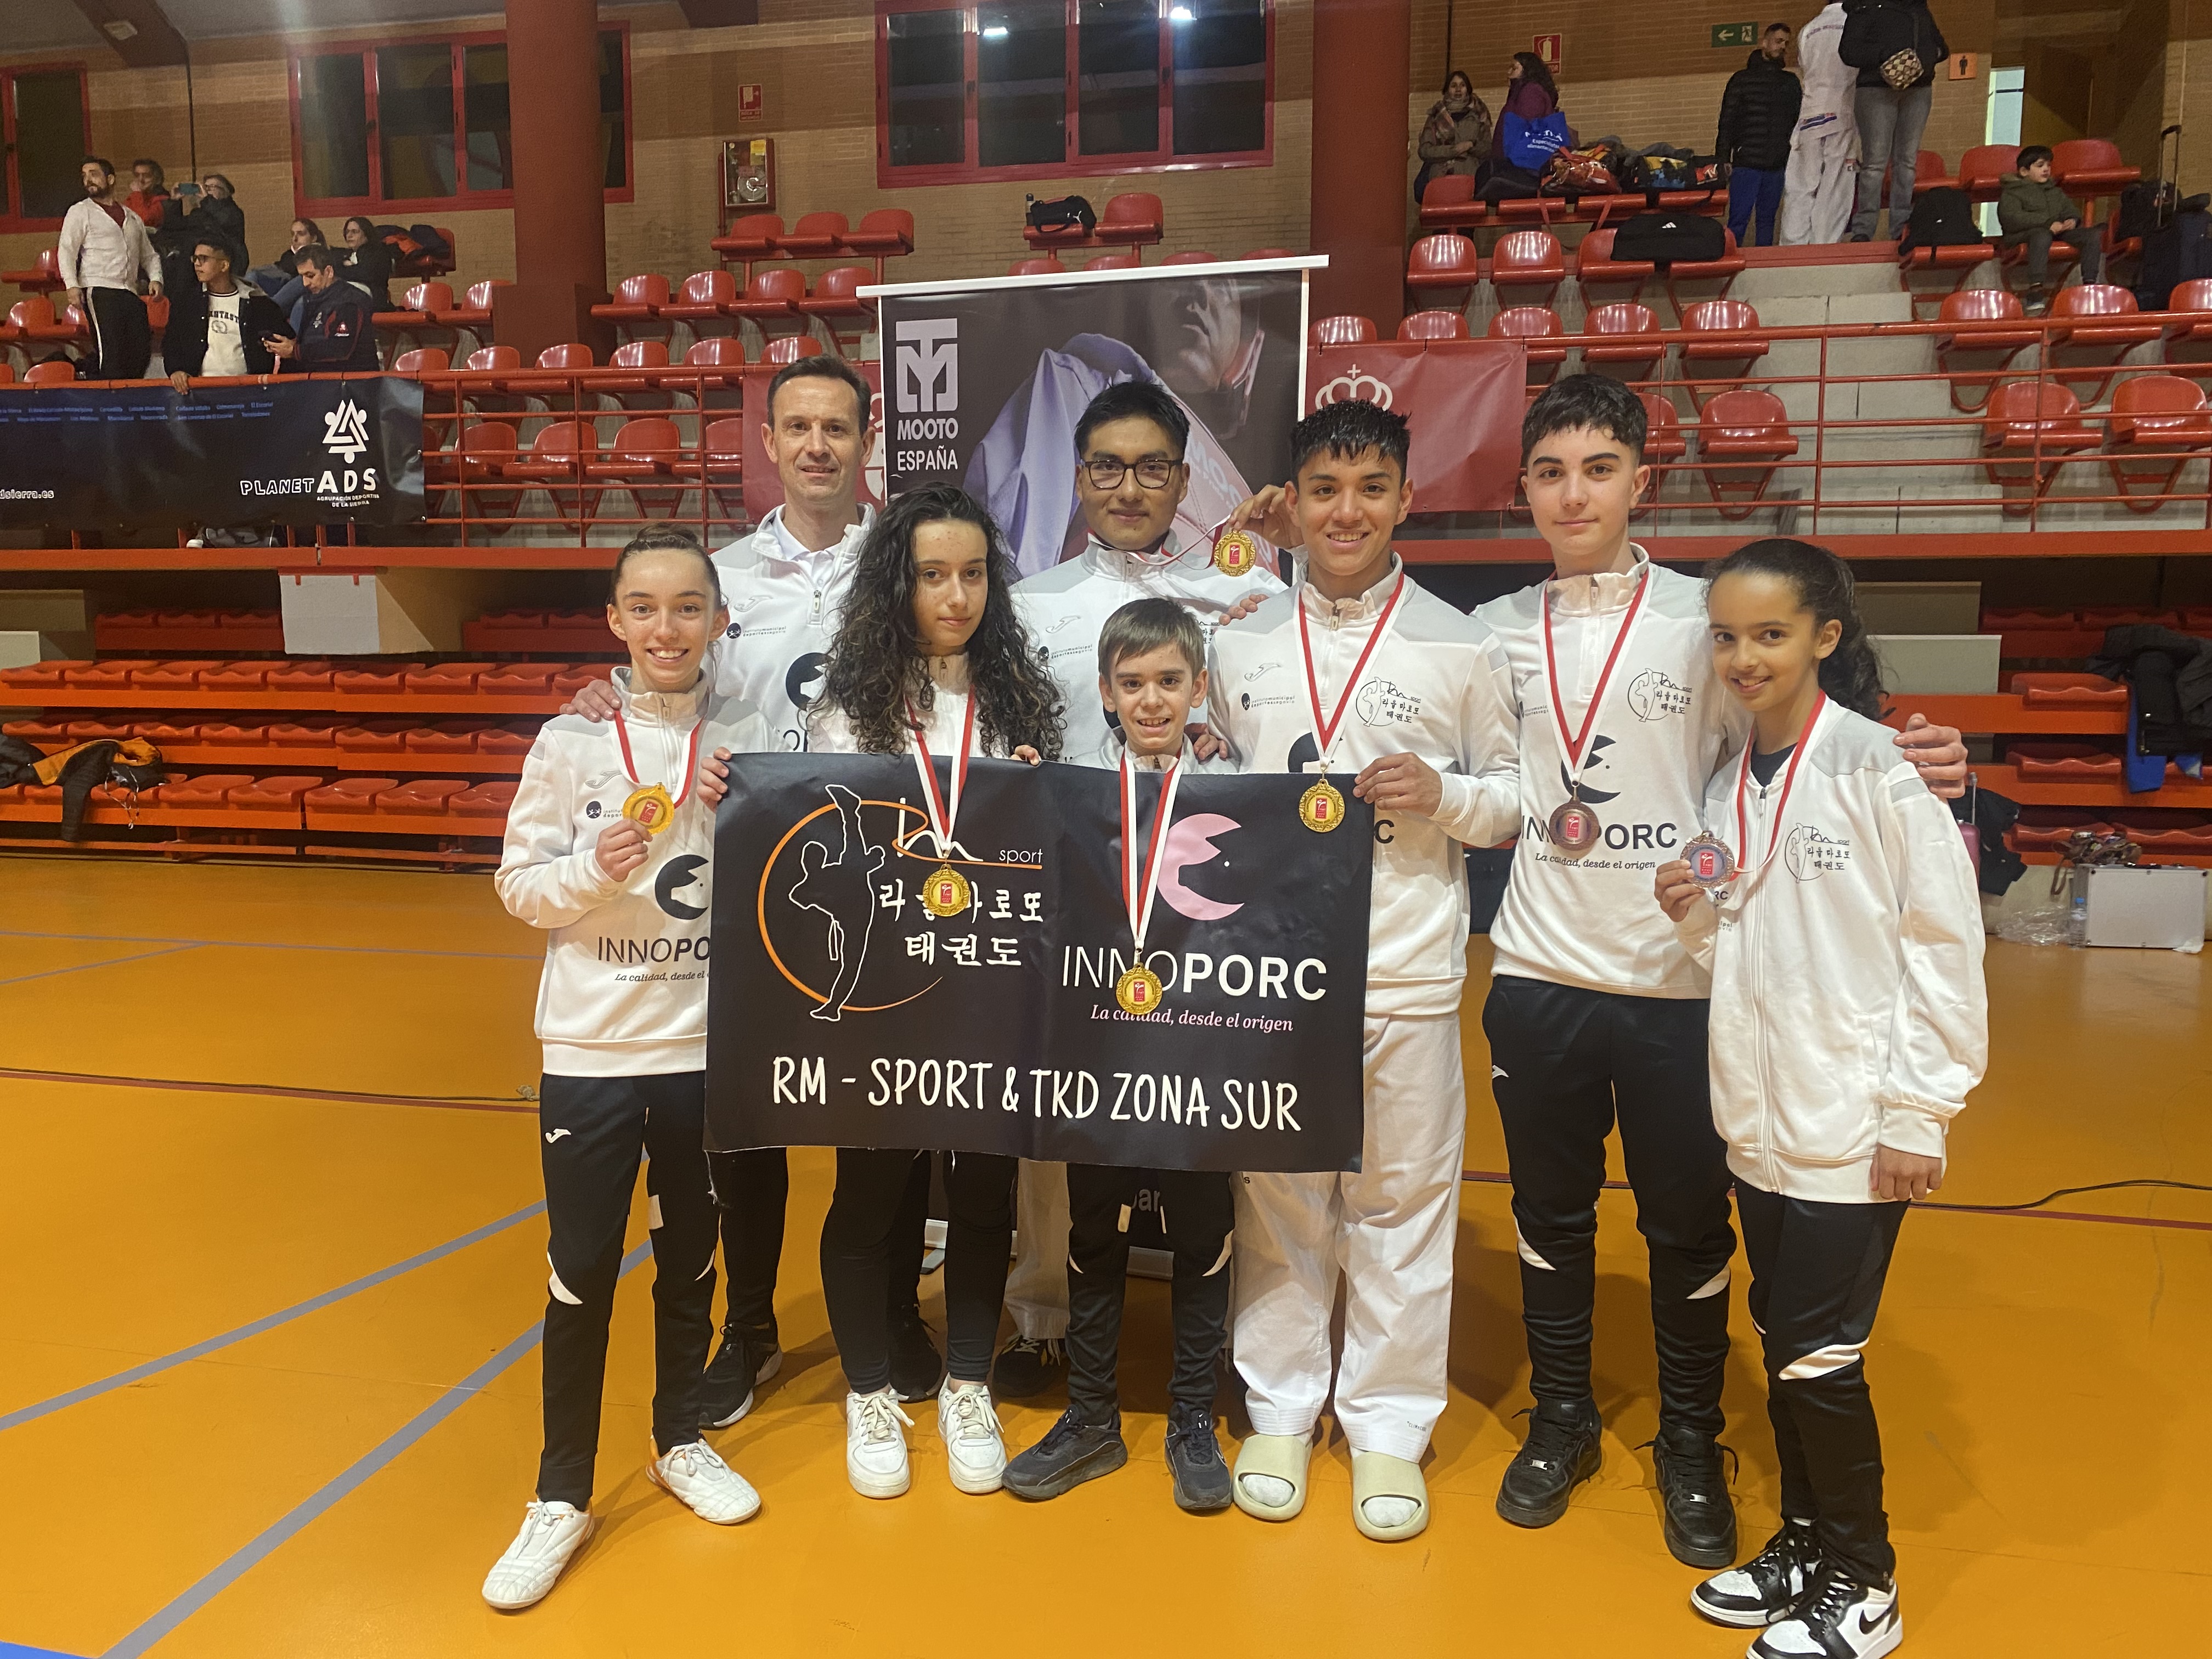 El CD Taekwondo RM-Sport Innoporc cuna de campeones